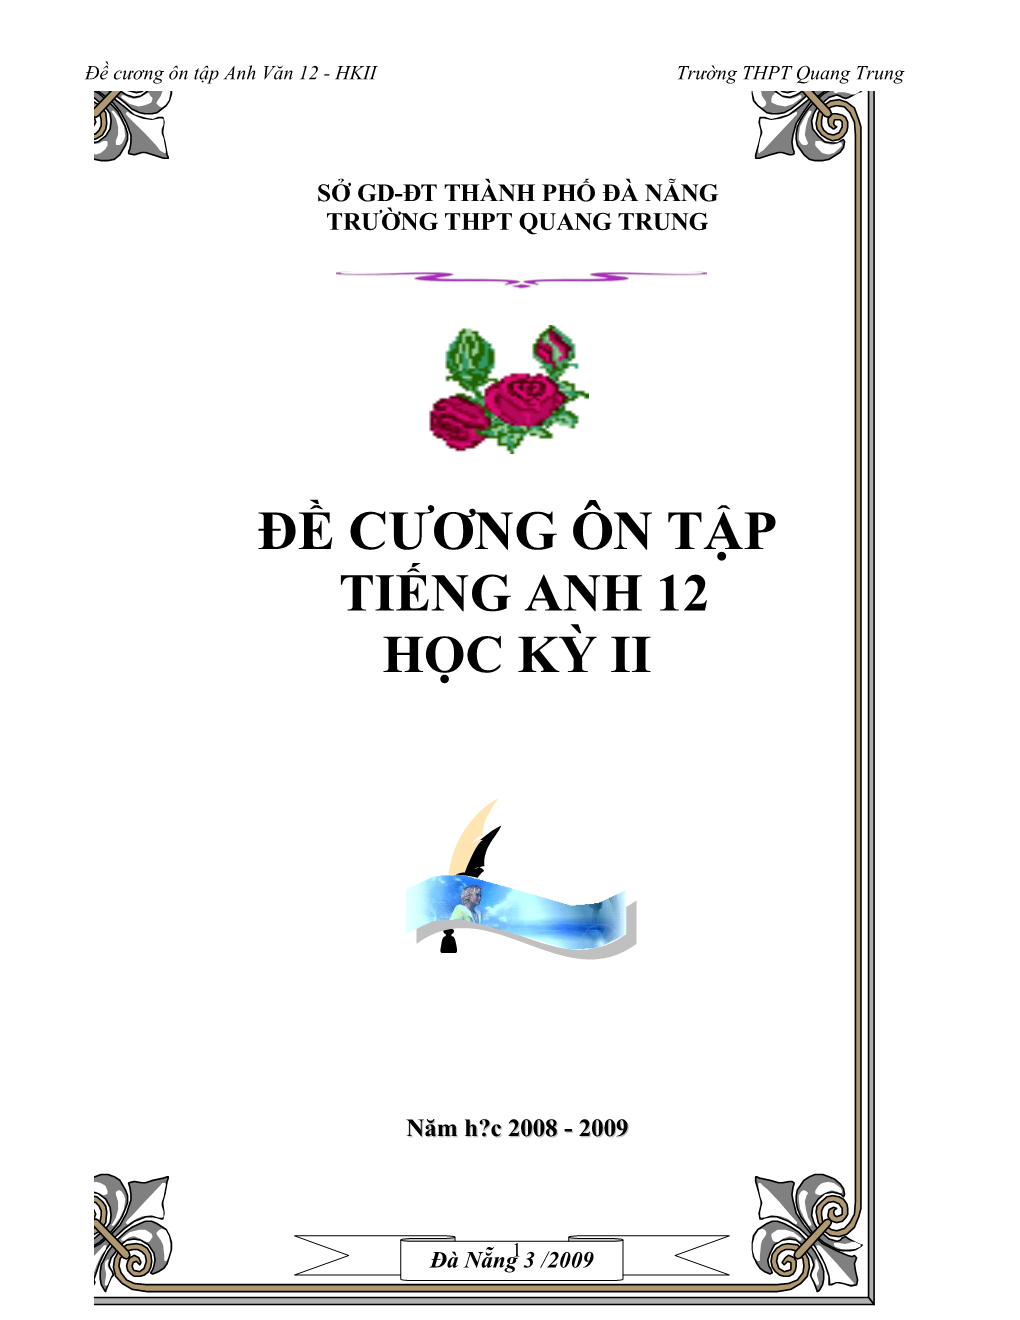 Đề Cương Ôn Tập Anh Văn 12 - HKII Trường THPT Quang Trung